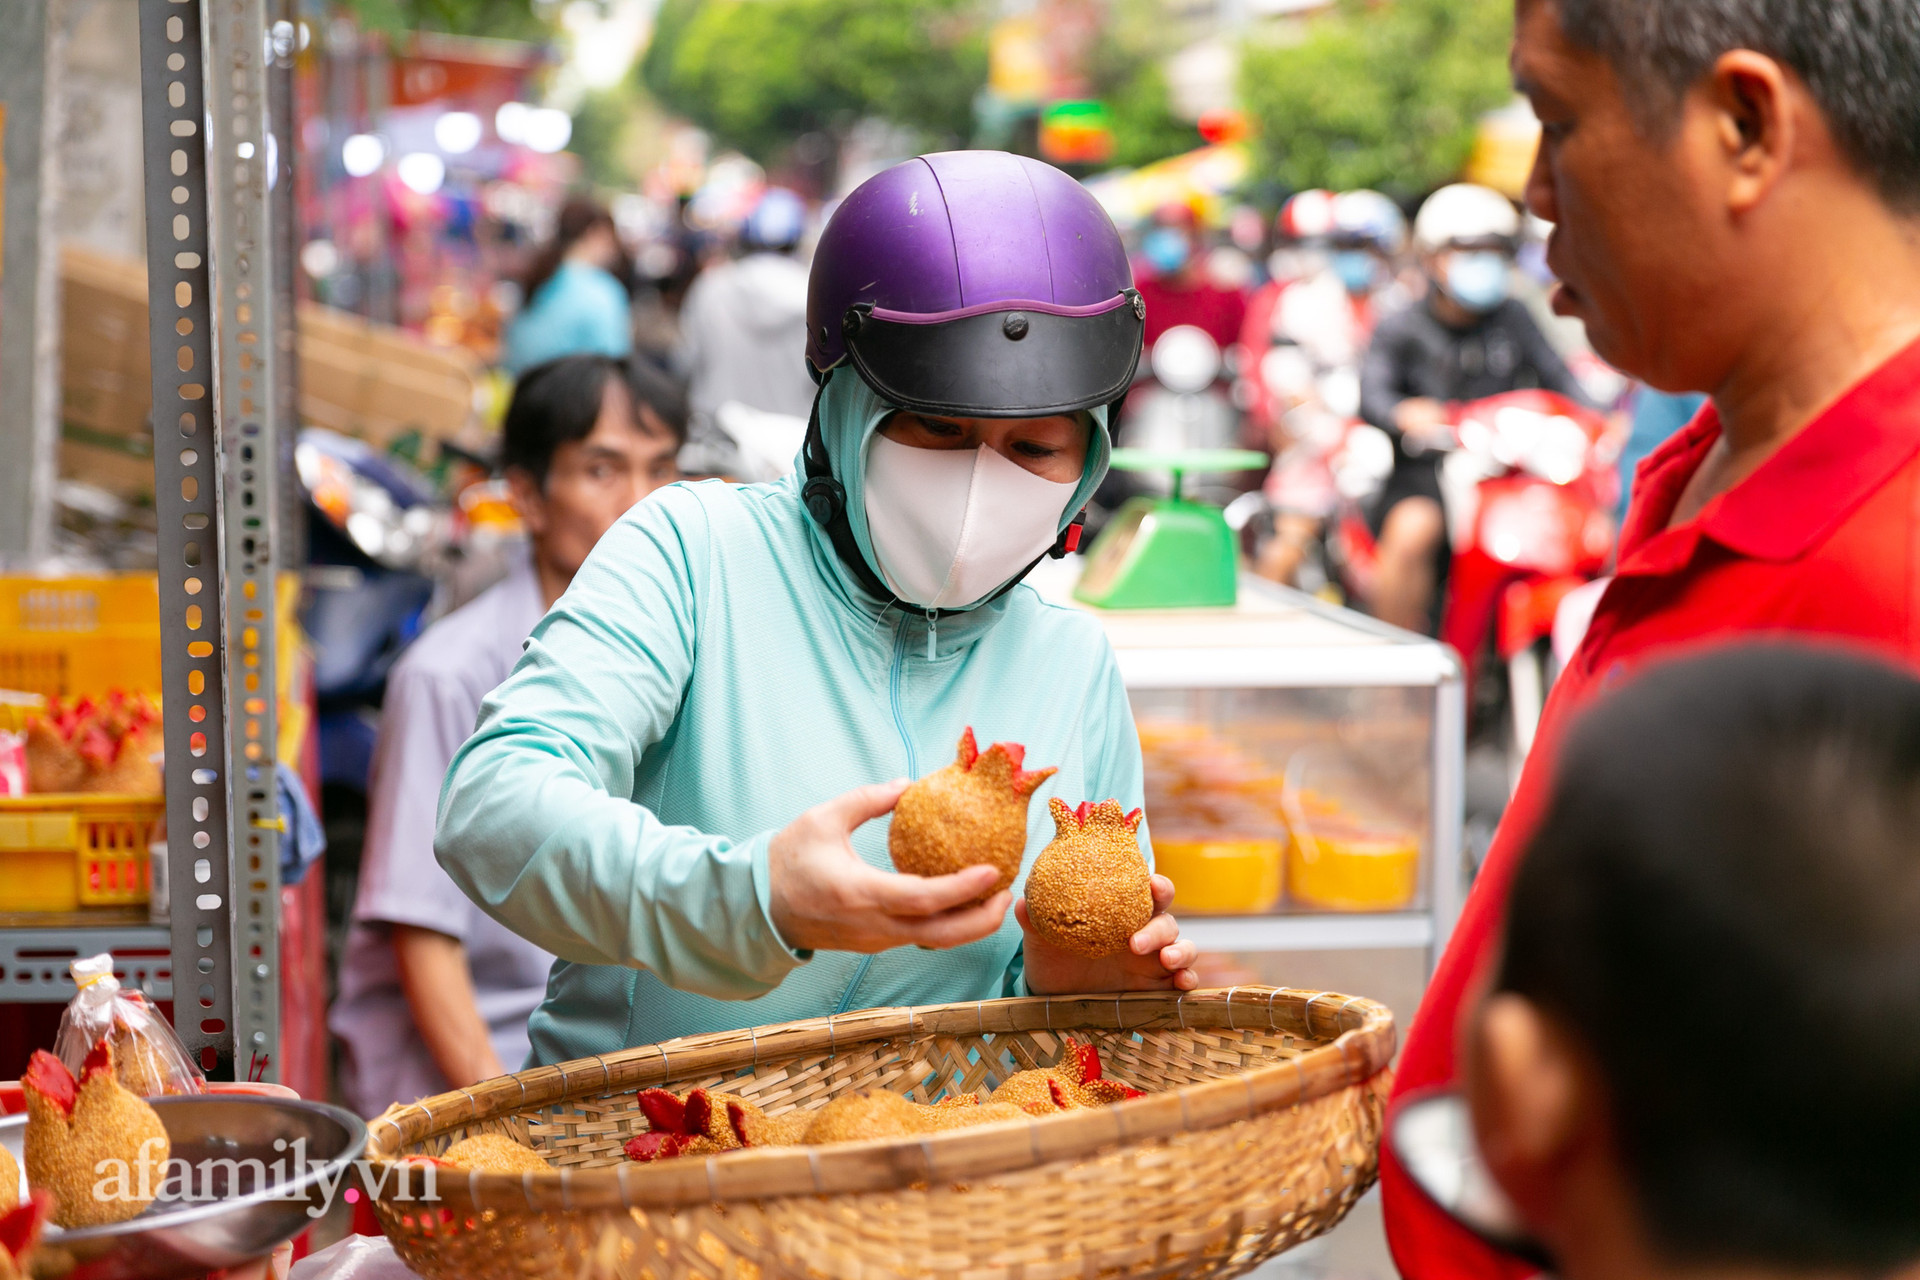 Độc đáo bánh lựu cầu duyên truyền thống của người Hoa ở Sài Gòn: Chỉ bán duy nhất một lần trong năm, 4 người phụ làm hơn 1.000 cái mà bán sạch trong 1 tiếng - Ảnh 28.